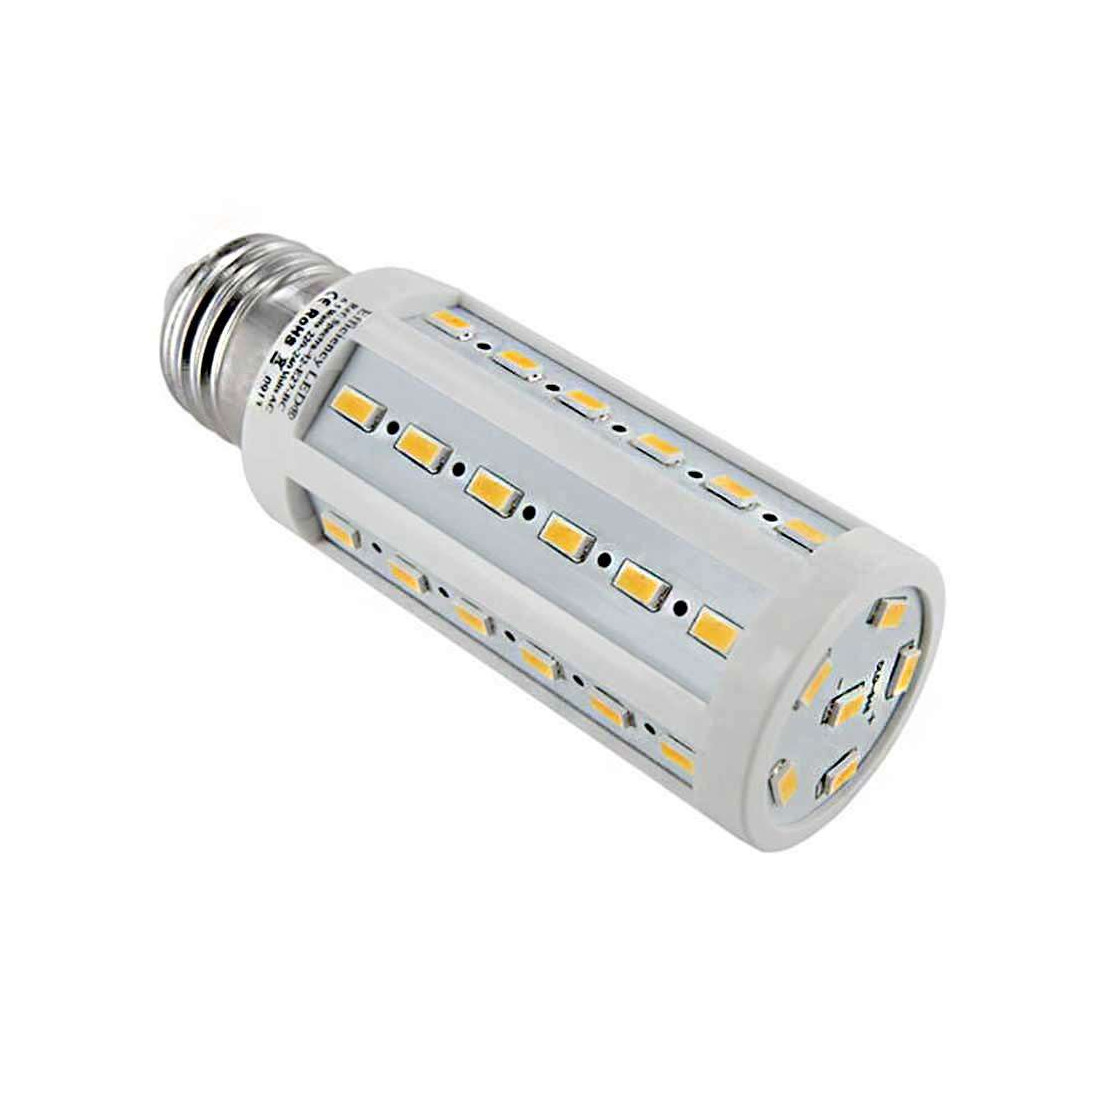 Ehmann 5591x0100 Variateur rotatif Adapté pour ampoule: Lampe LED, Lampe  halogène, Ampoule électrique blanc (RAL 9016) - Conrad Electronic France